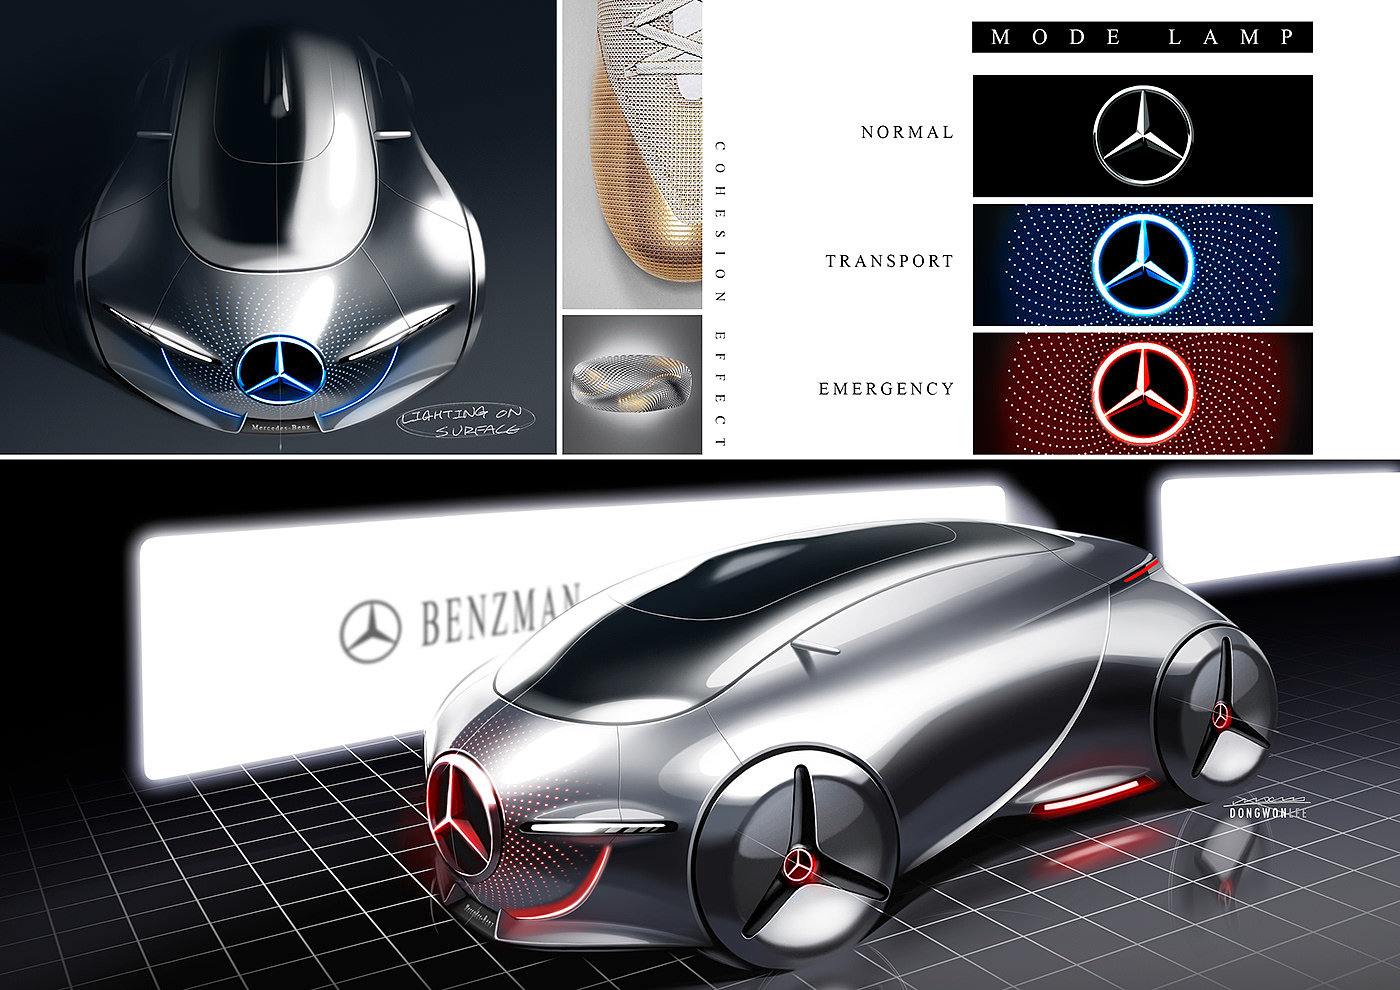 BENZMAN，产品设计，工业设计，共享汽车，汽车，